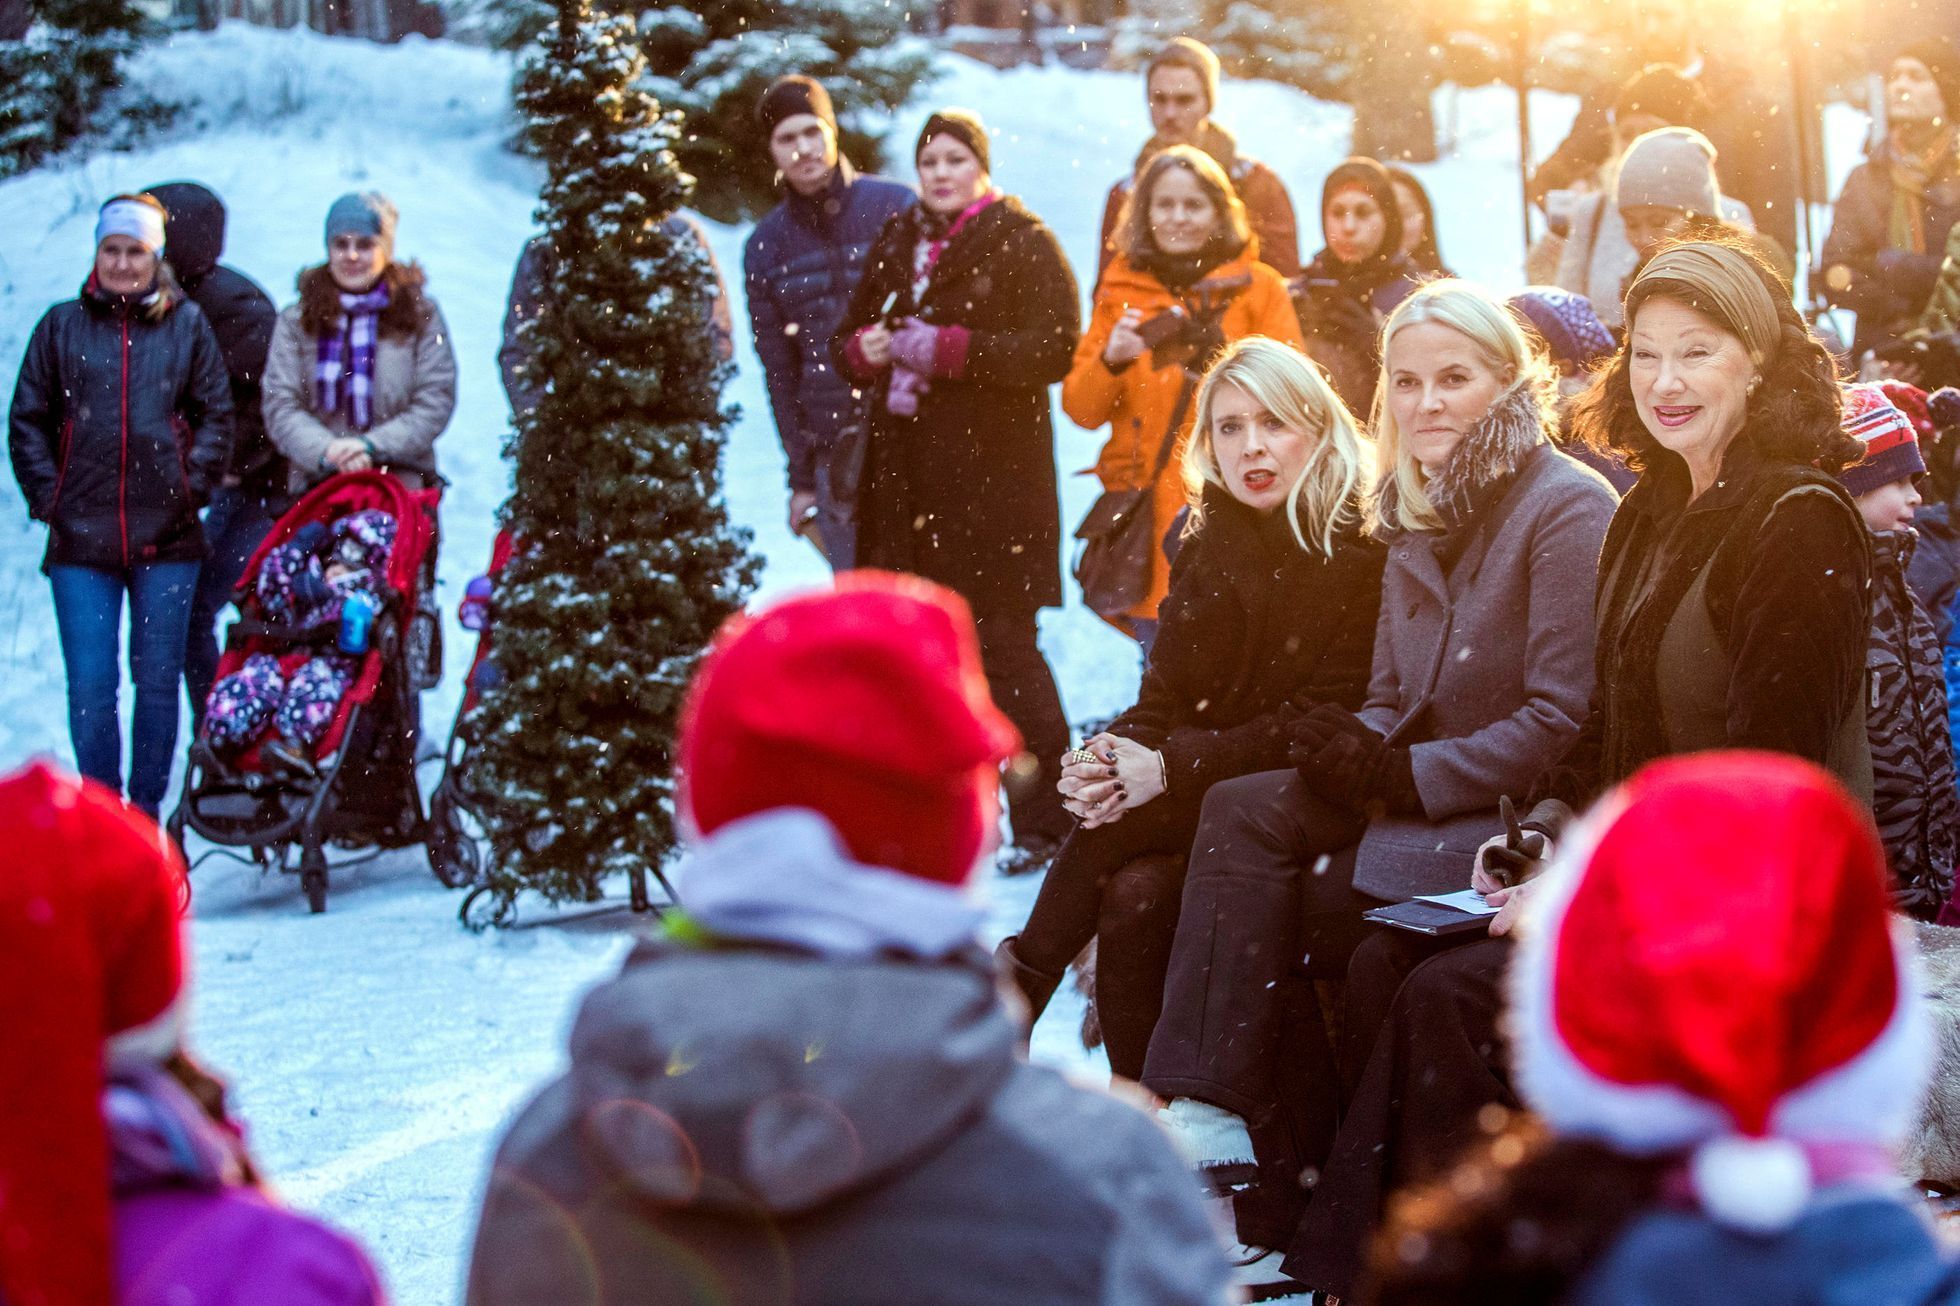 Norská korunní princezna Mette-Marit poslouchá zpěv koled v azylovém centru nedaleko Osla